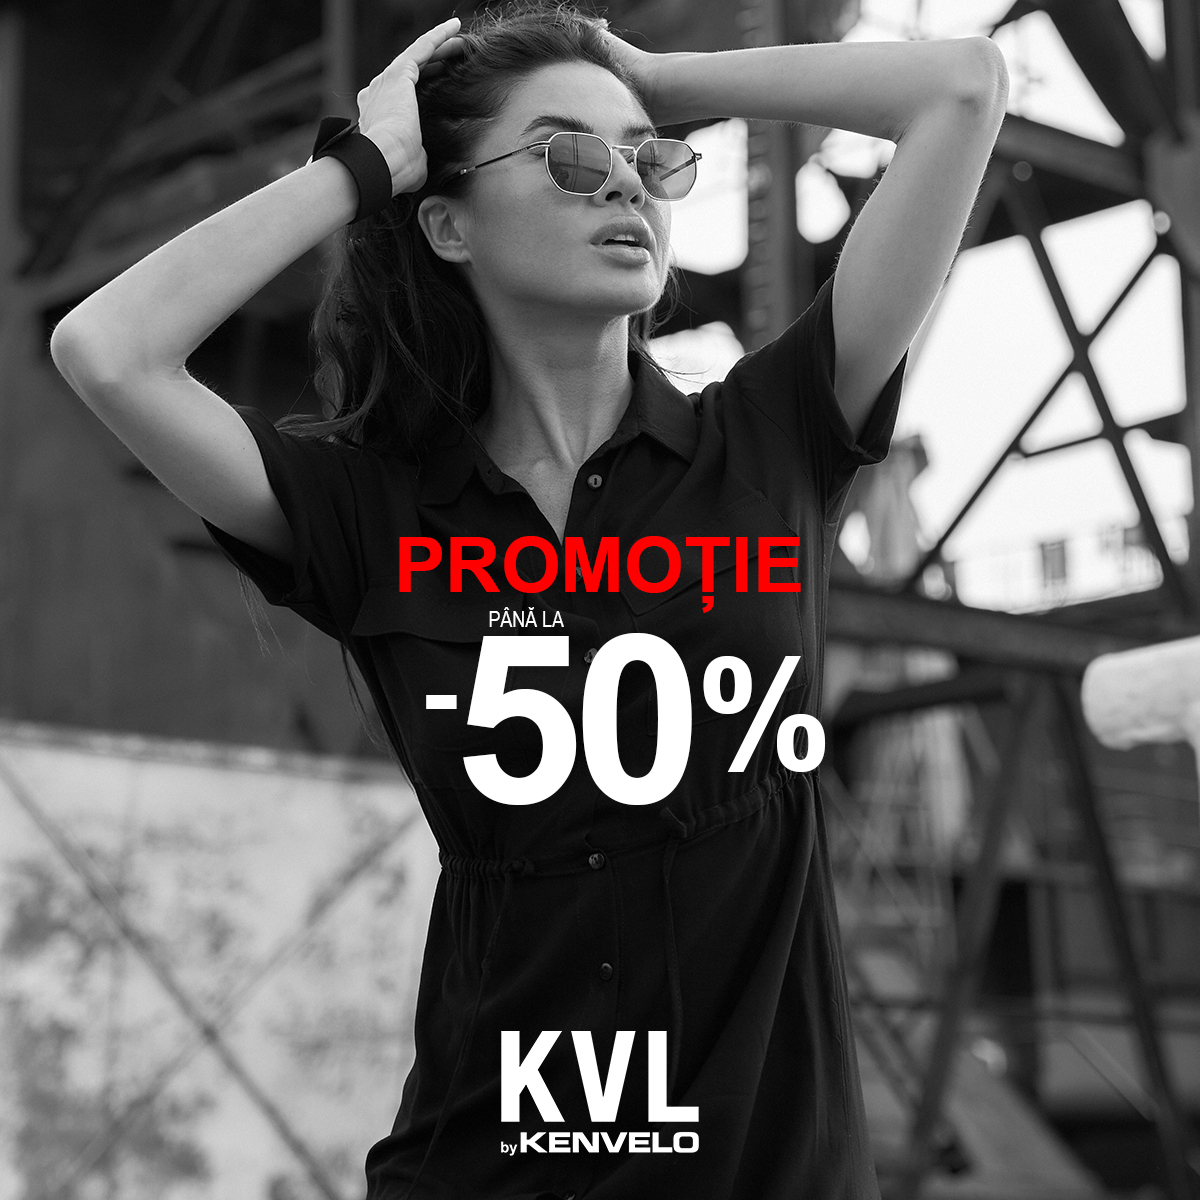 KVL: PROMOTIE DE VARA pana la -50%